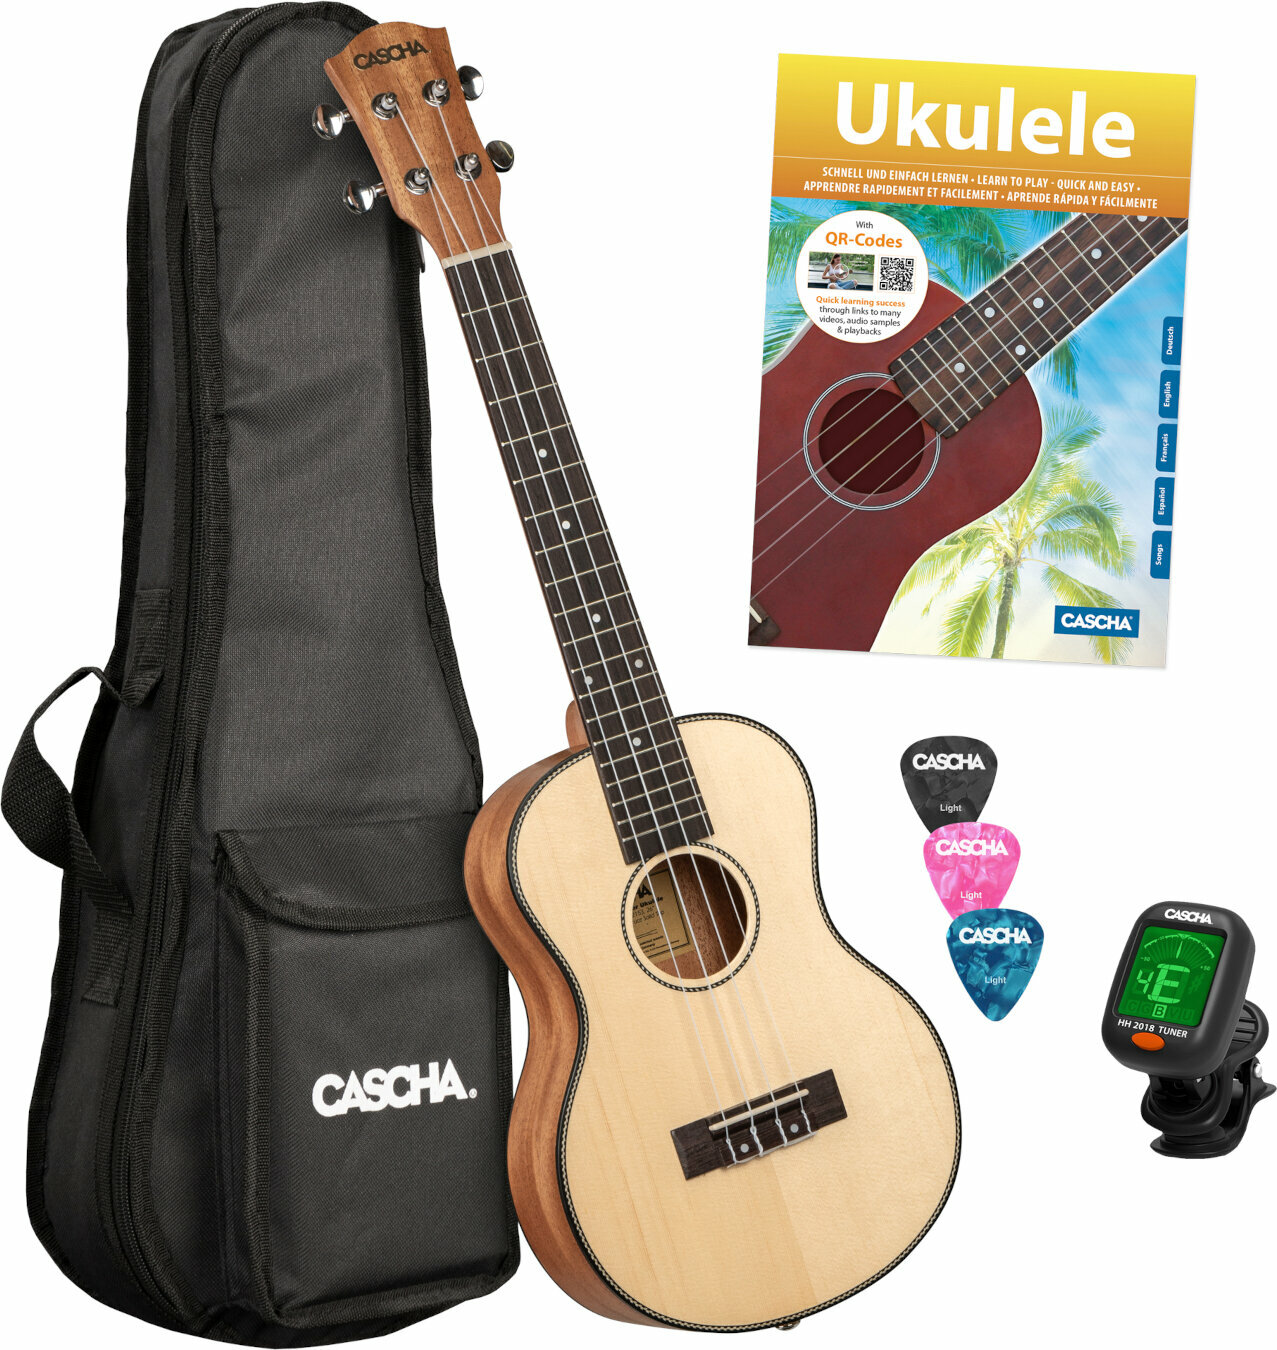 Tenor ukulele Cascha HH2155 Tenor ukulele Natural